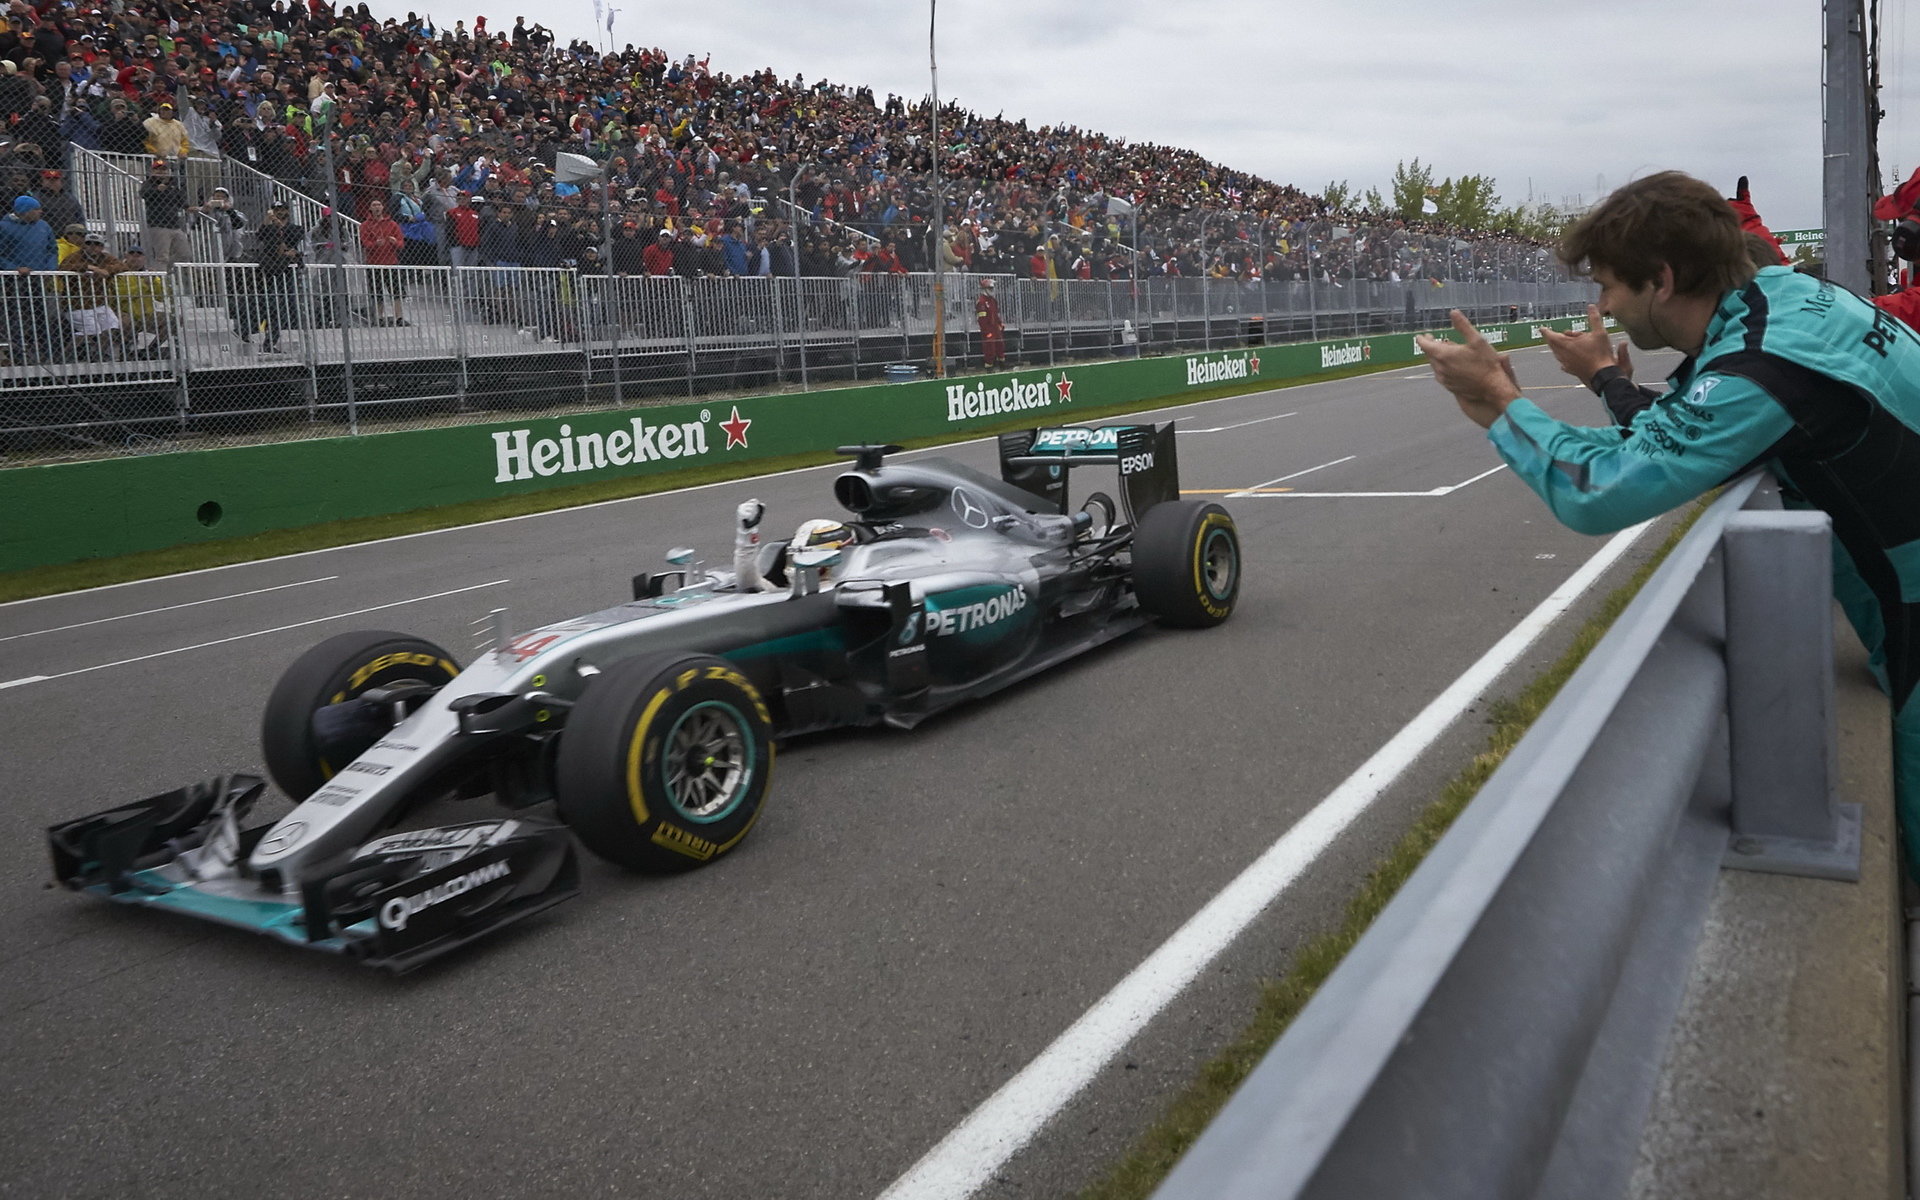 Lewis Hamilton v cíli závodu v Kanadě